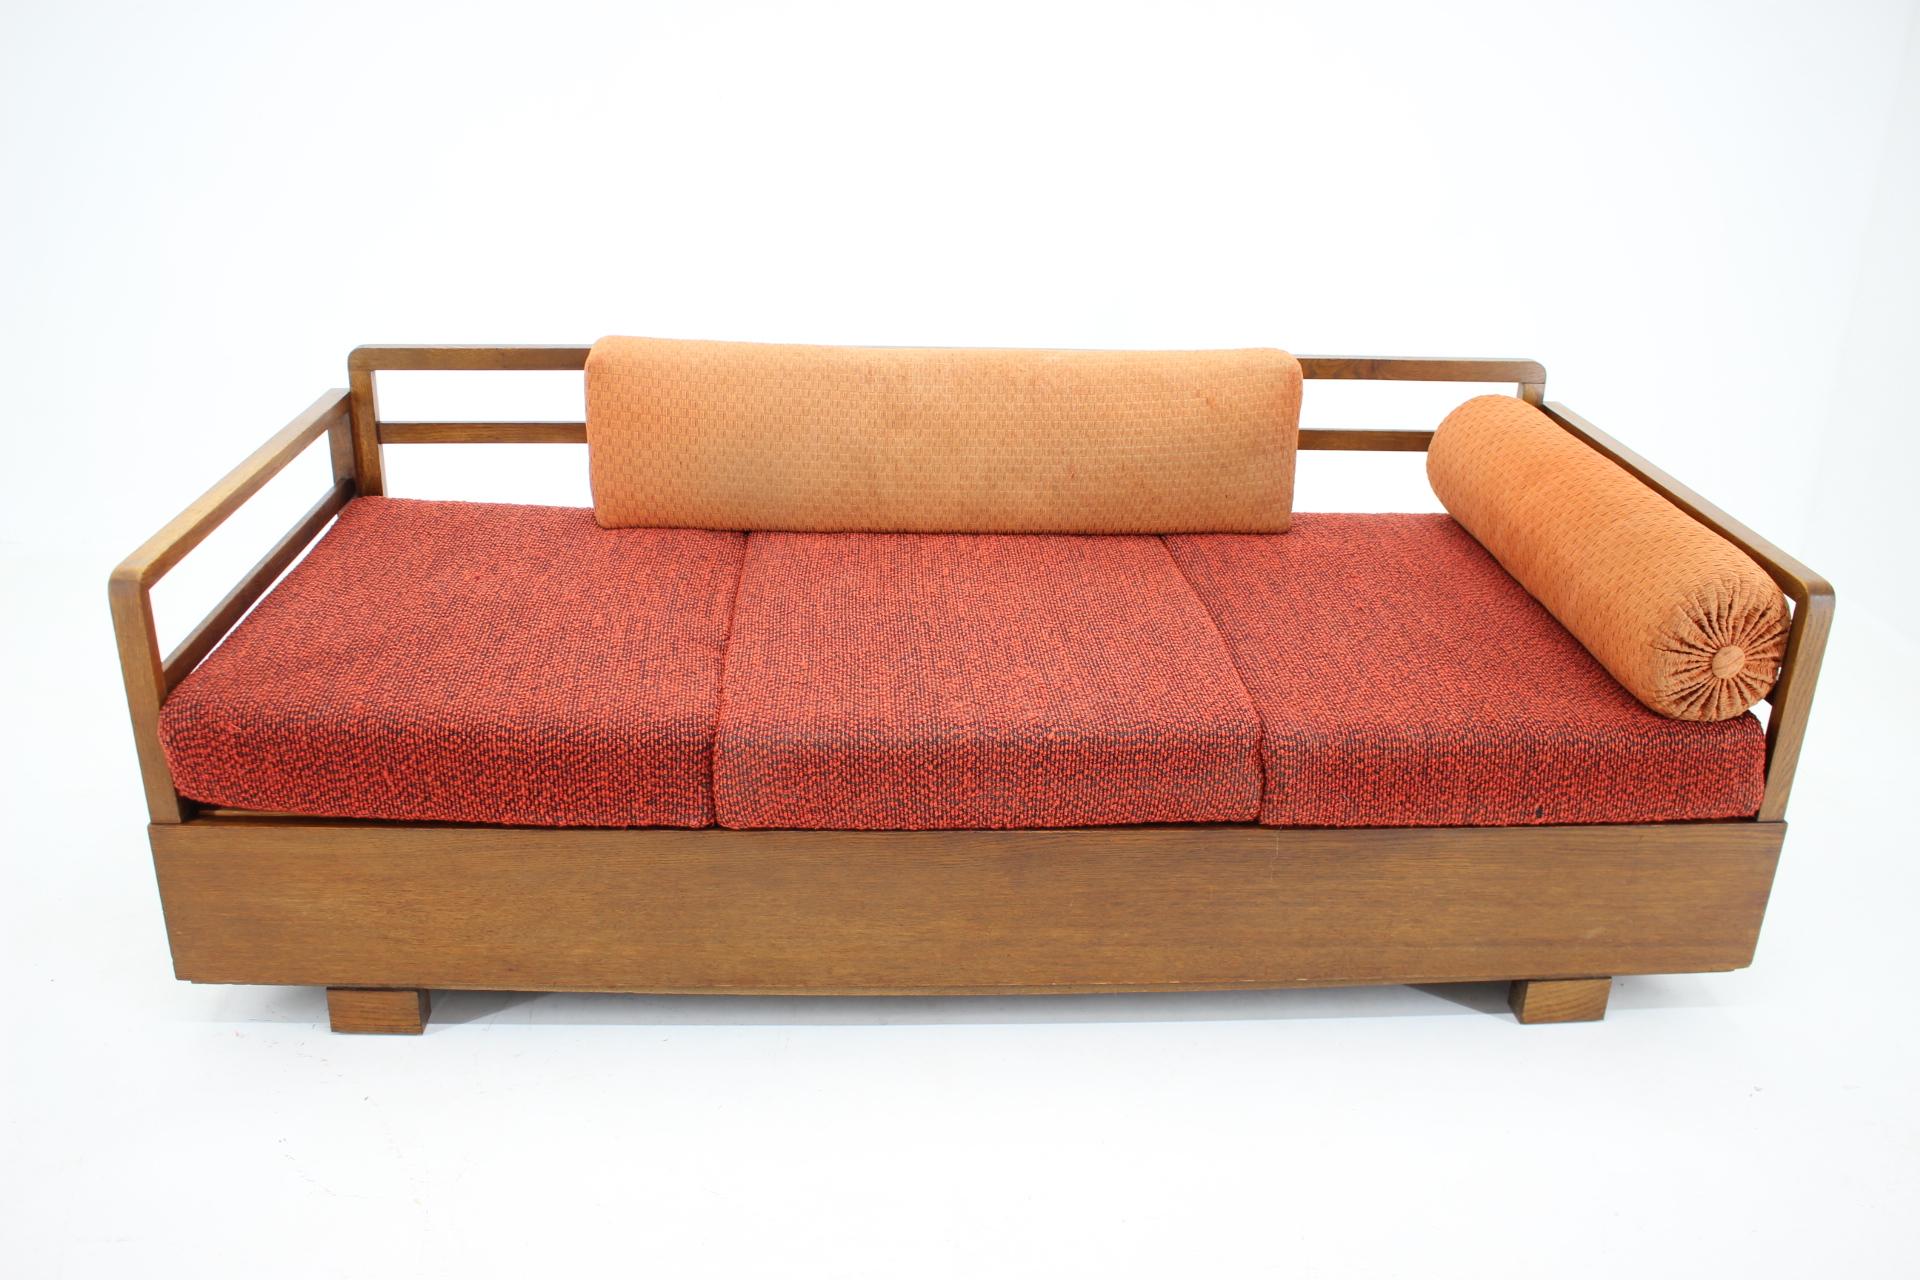 1940s Art Deco Sofa/Daybed by UP Zavody, Czechoslovakia 1